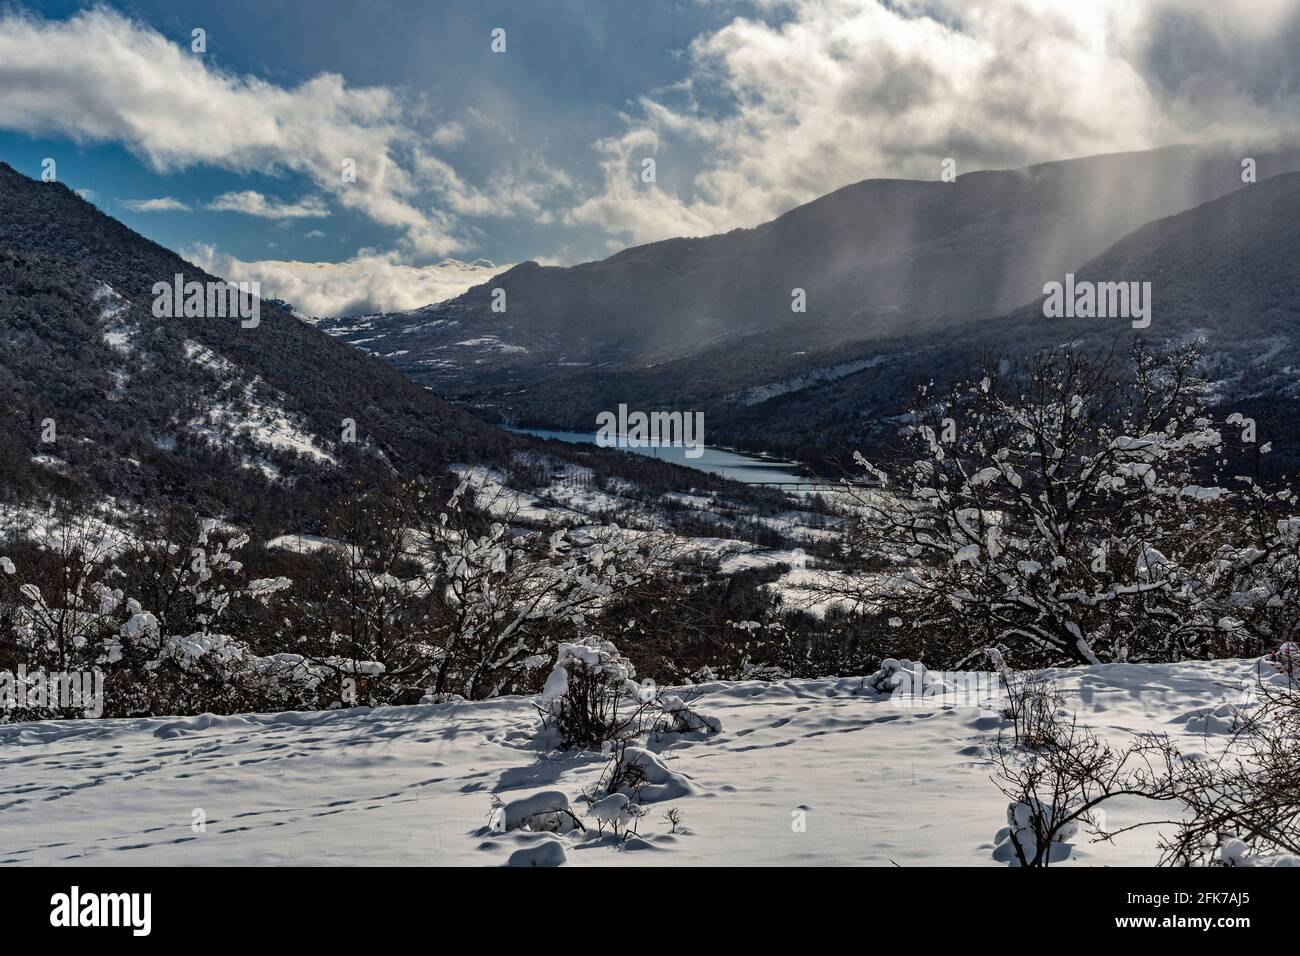 Le lac de Barrea avec les sommets des Abruzzes Latium et le parc national Molise couvert de neige. Abruzzes, Italie, Europe Banque D'Images